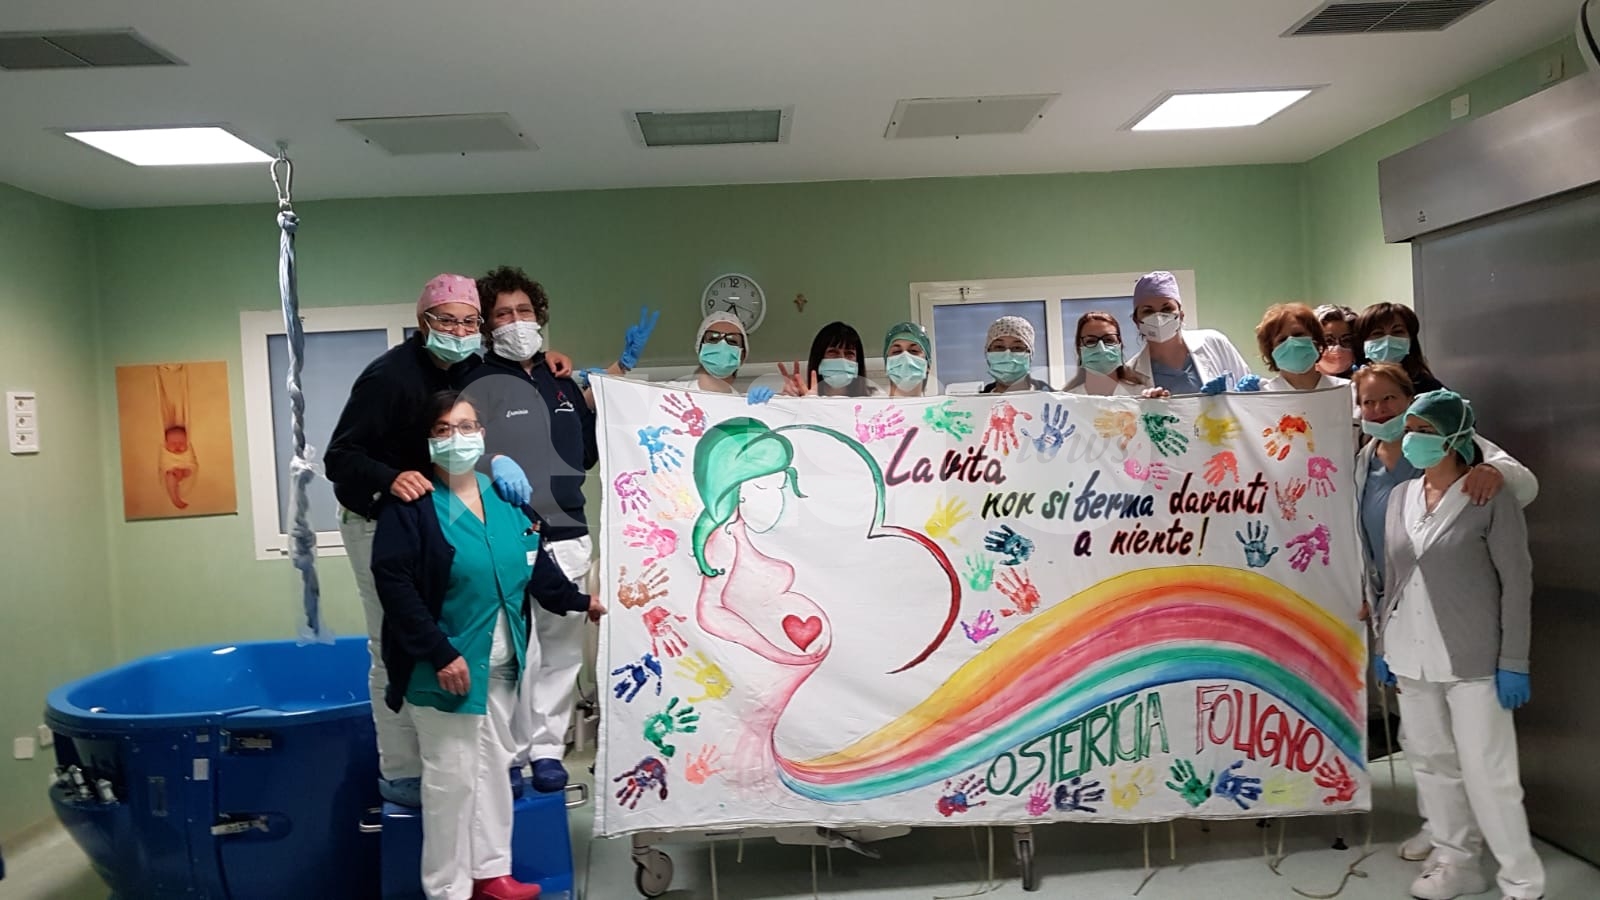 "La vita non si ferma davanti a niente": il messaggio delle ostetriche dell'ospedale di Foligno